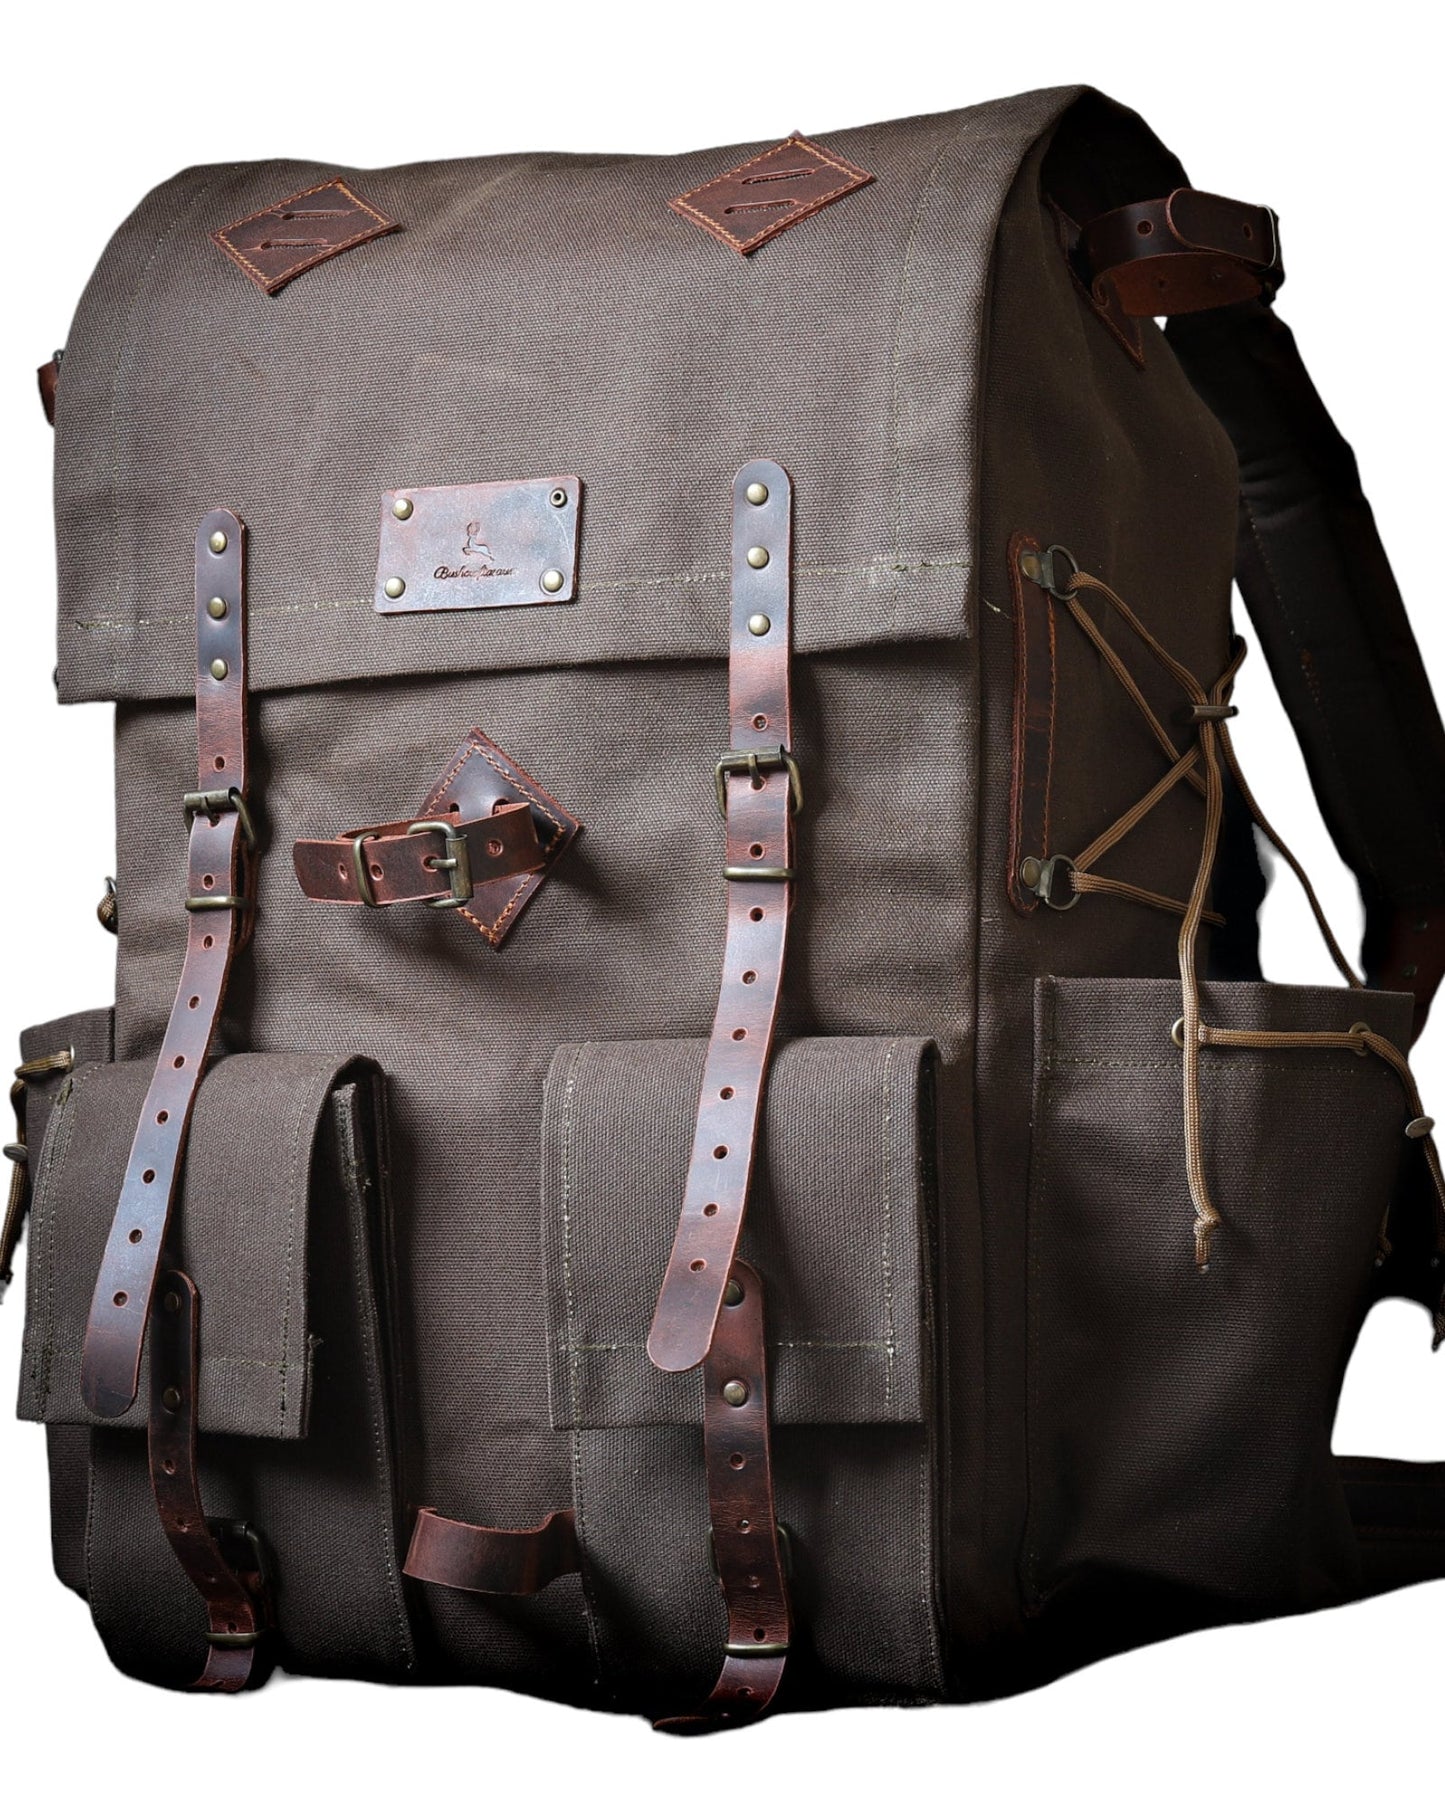 Hiking | Canvas Flap | Hiking Backpack | Hiking Bag | Leather and Canvas Backpack | Leather | Canvas | Camping Backpack | Camping | Rucksack bushcraft - camping - hiking backpack 99percenthandmade   